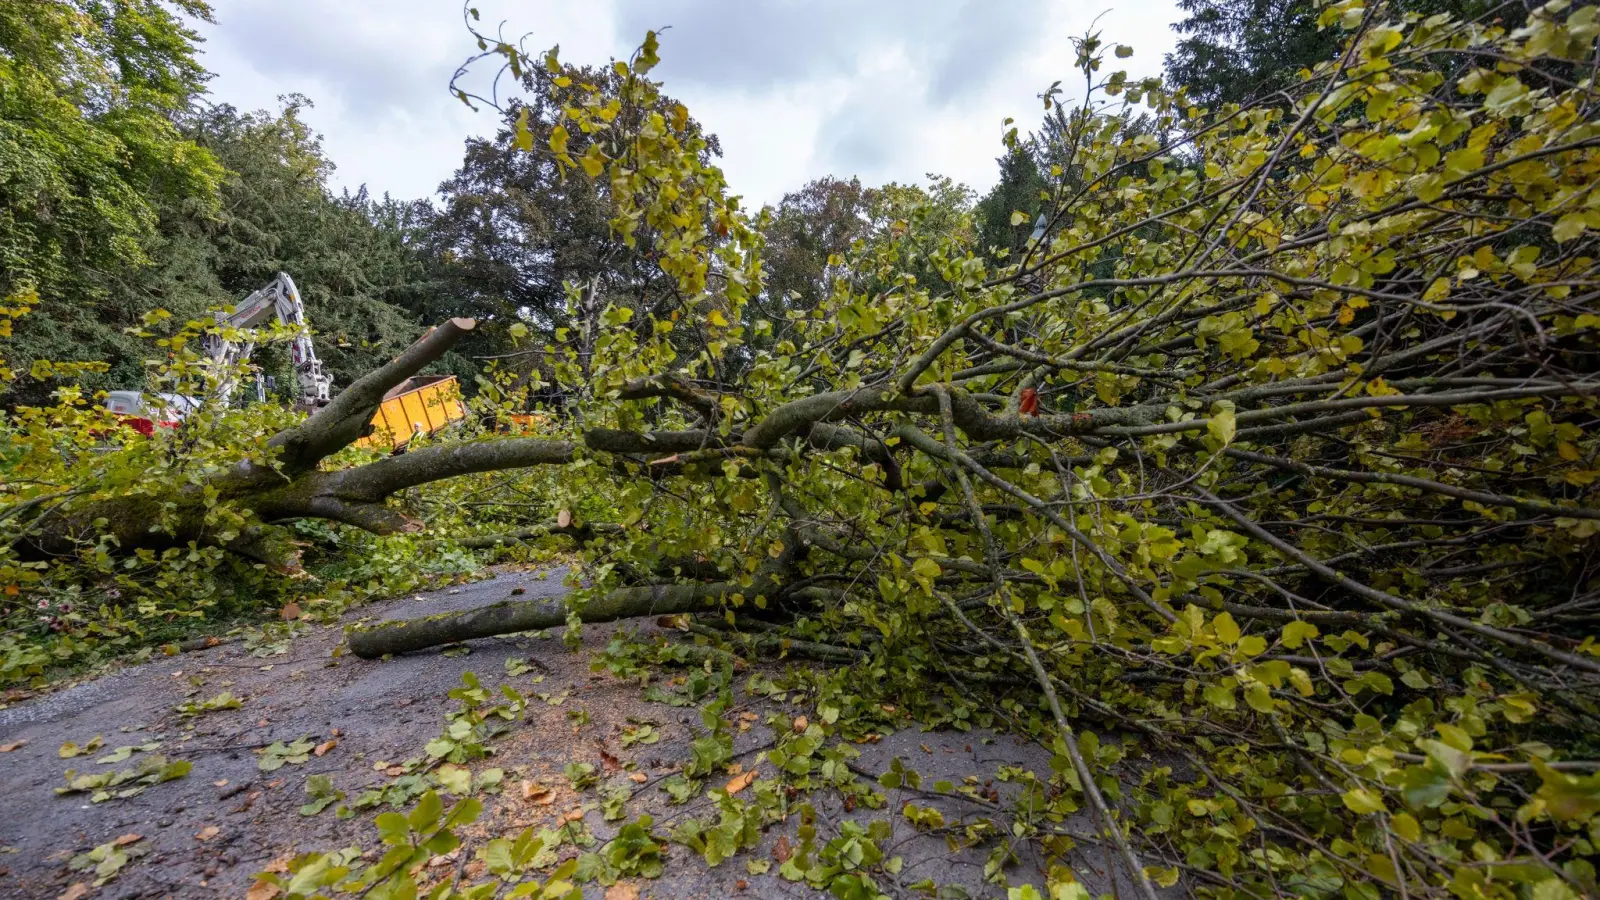 Arbeiter zerlegen den Baum, der aus bisher ungeklärter Ursache umgestürzt ist. (Foto: Heiko Becker/dpa)